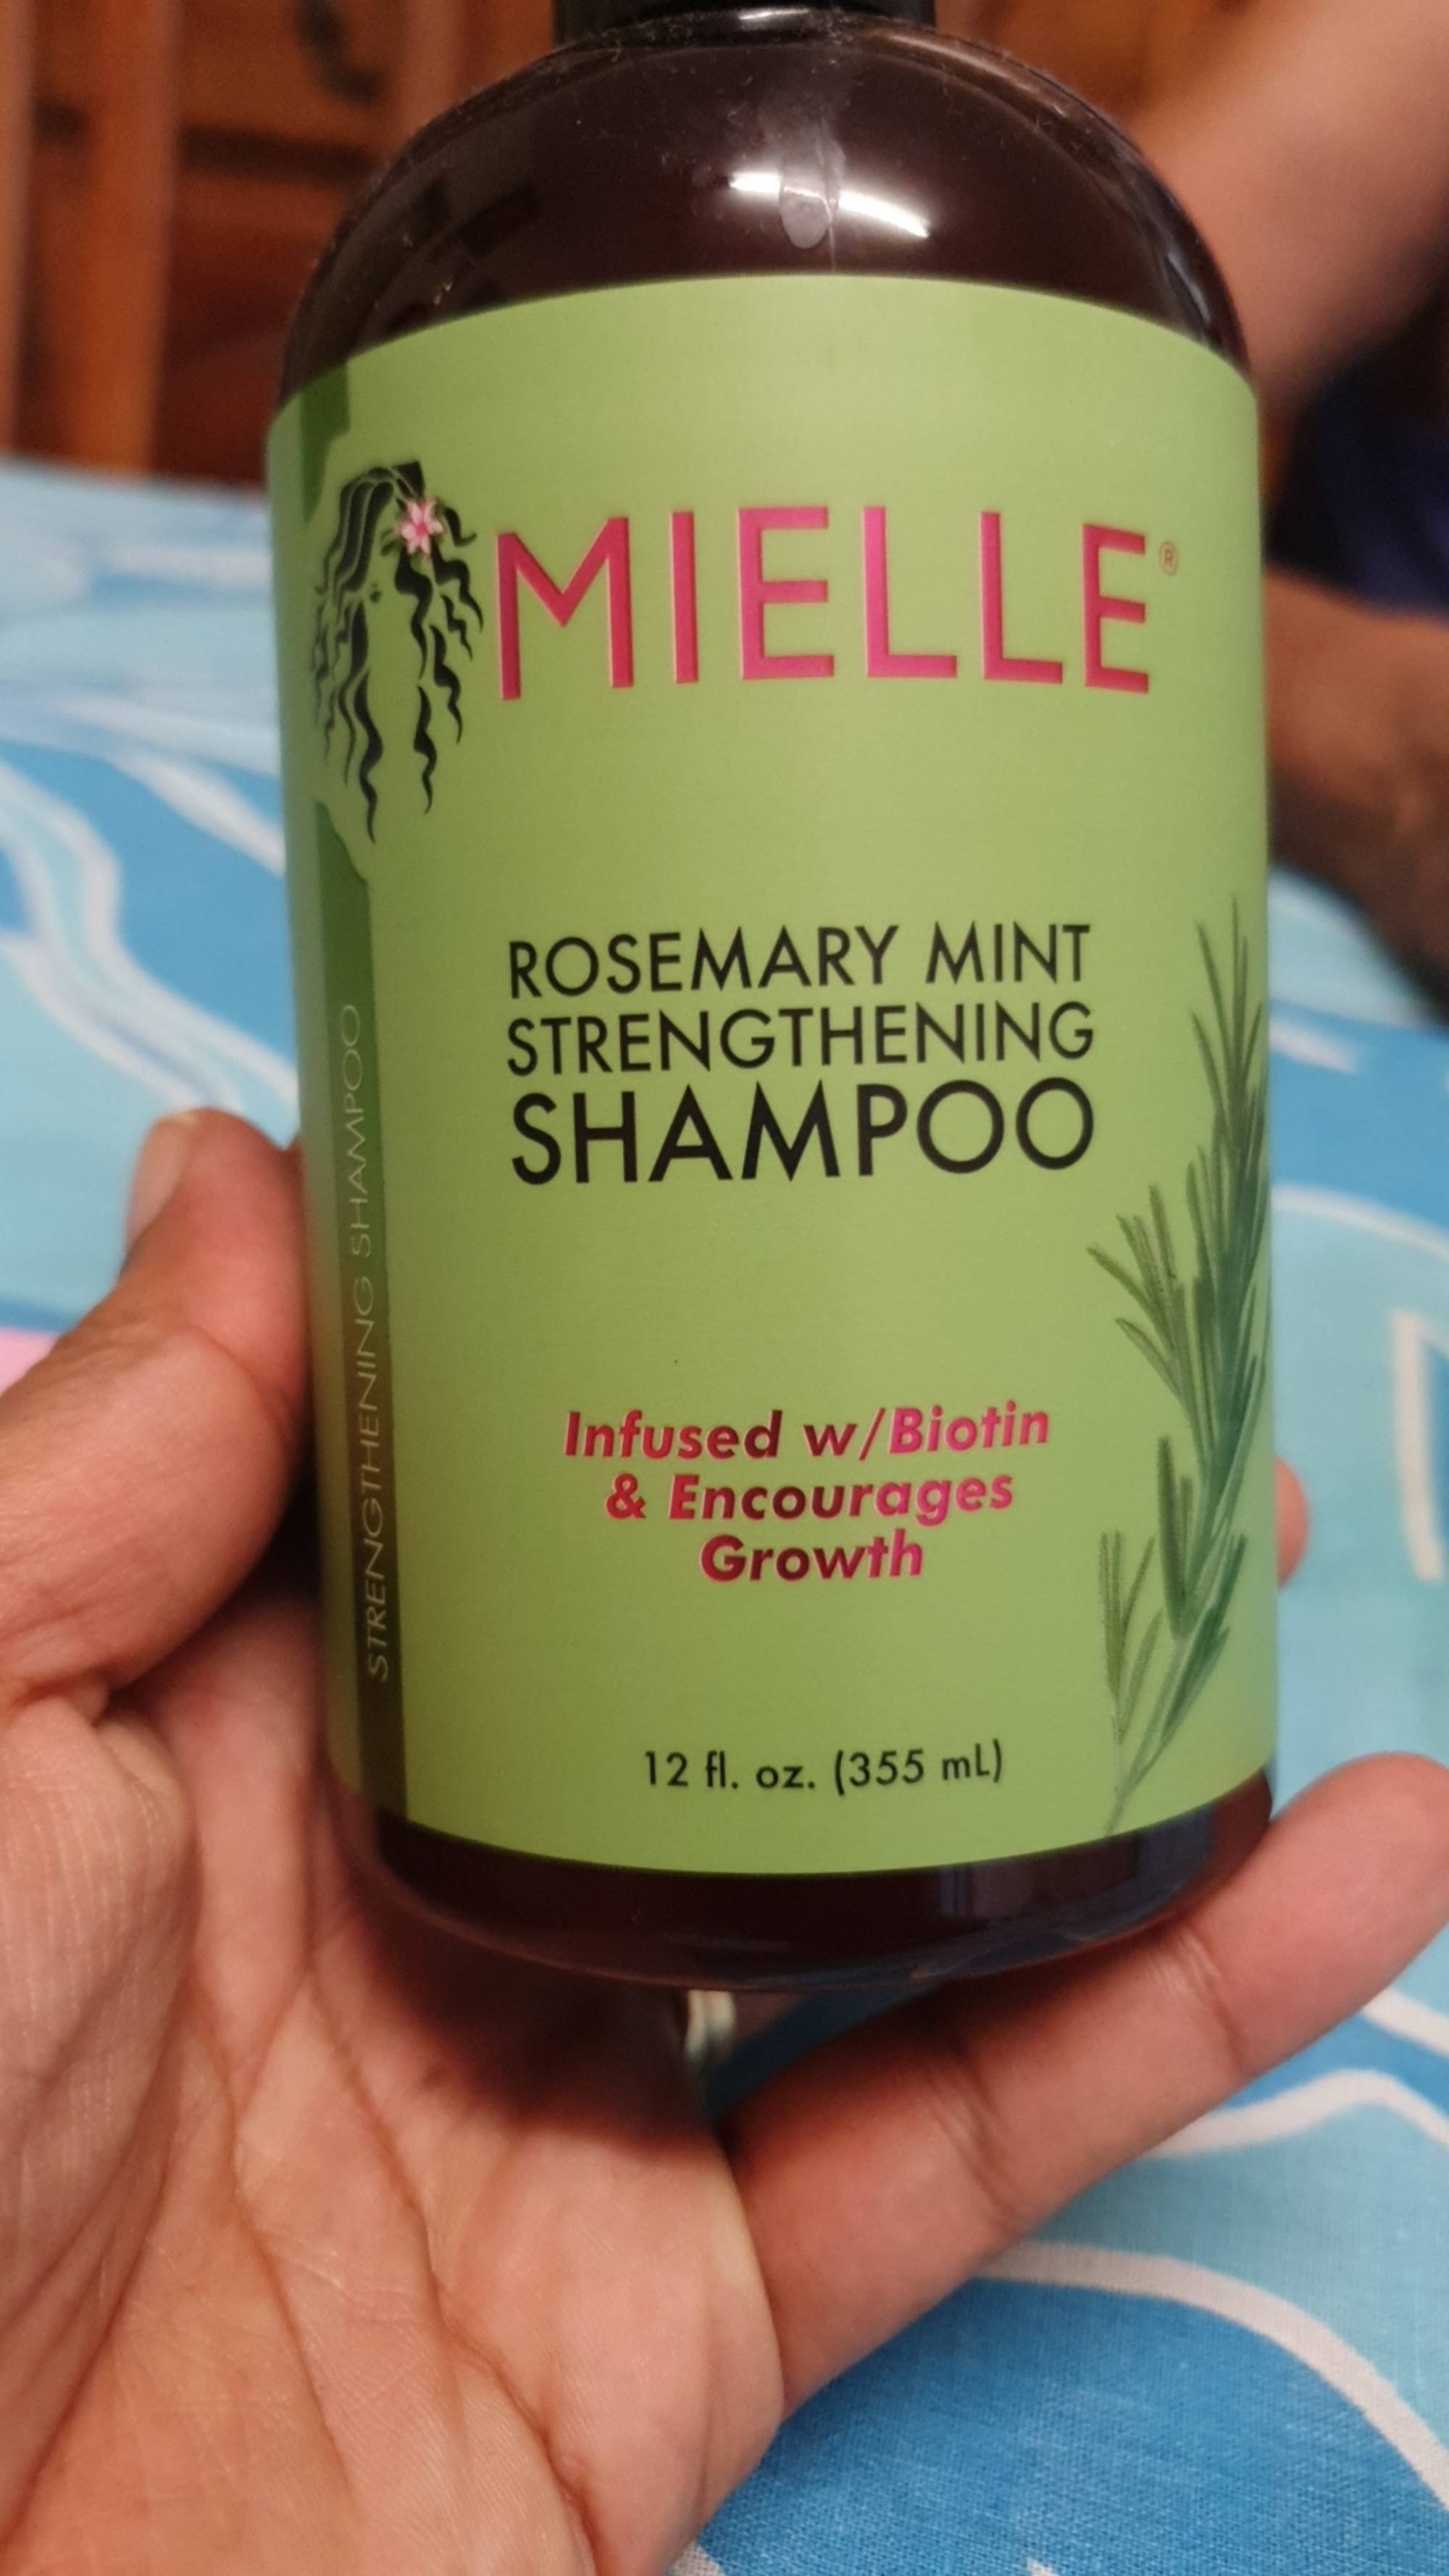 MIELLE - Rosemary mint - Strengthening shampoo